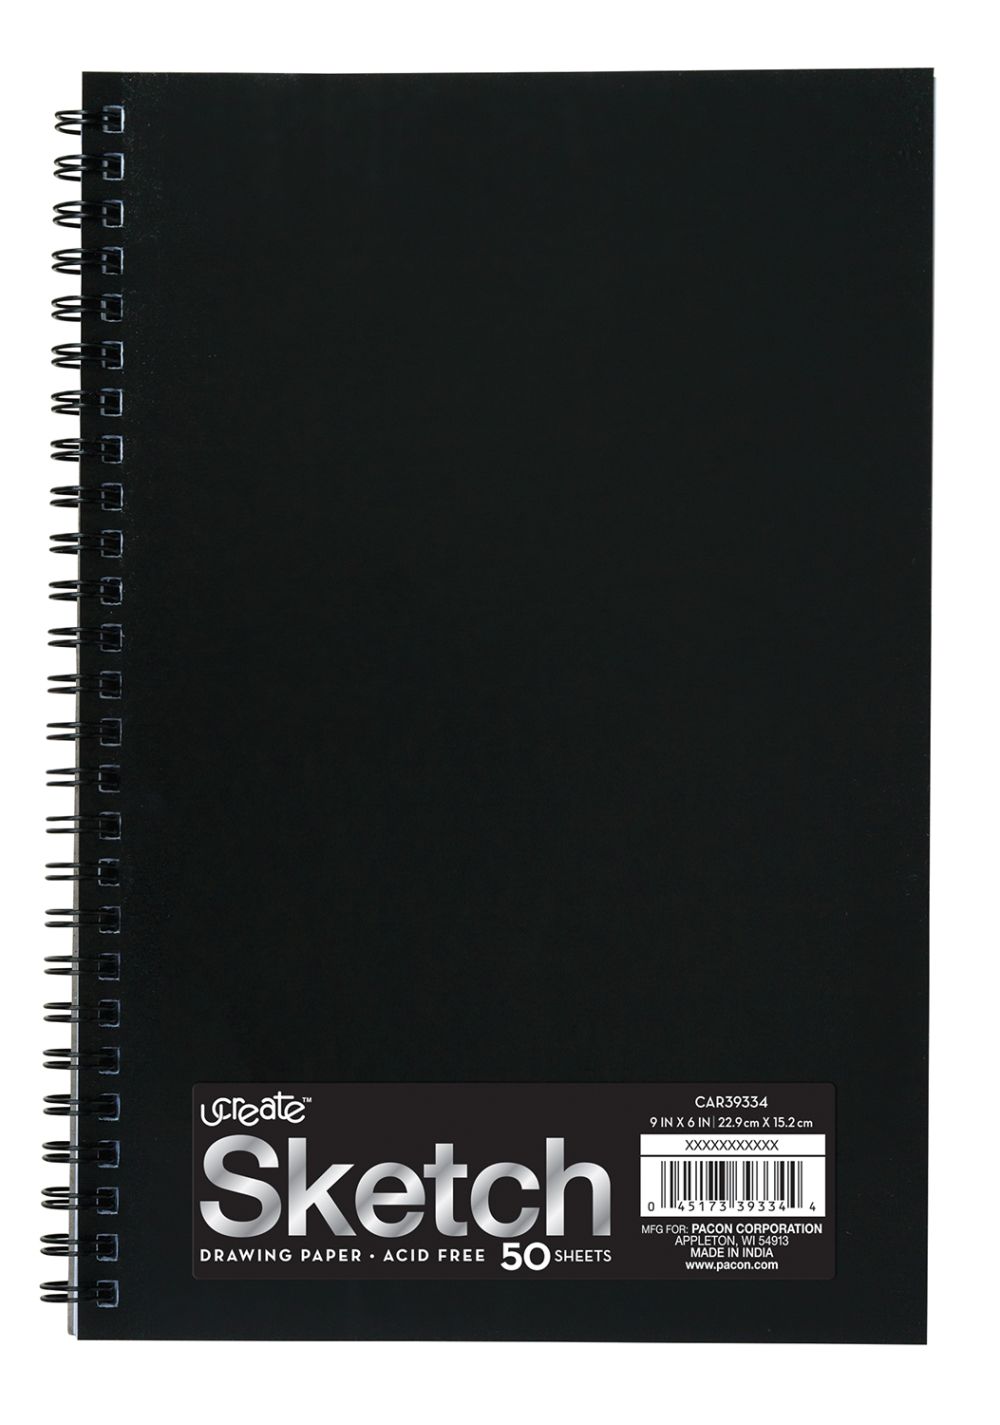 Pocket sketchbook : r/sketchbooks